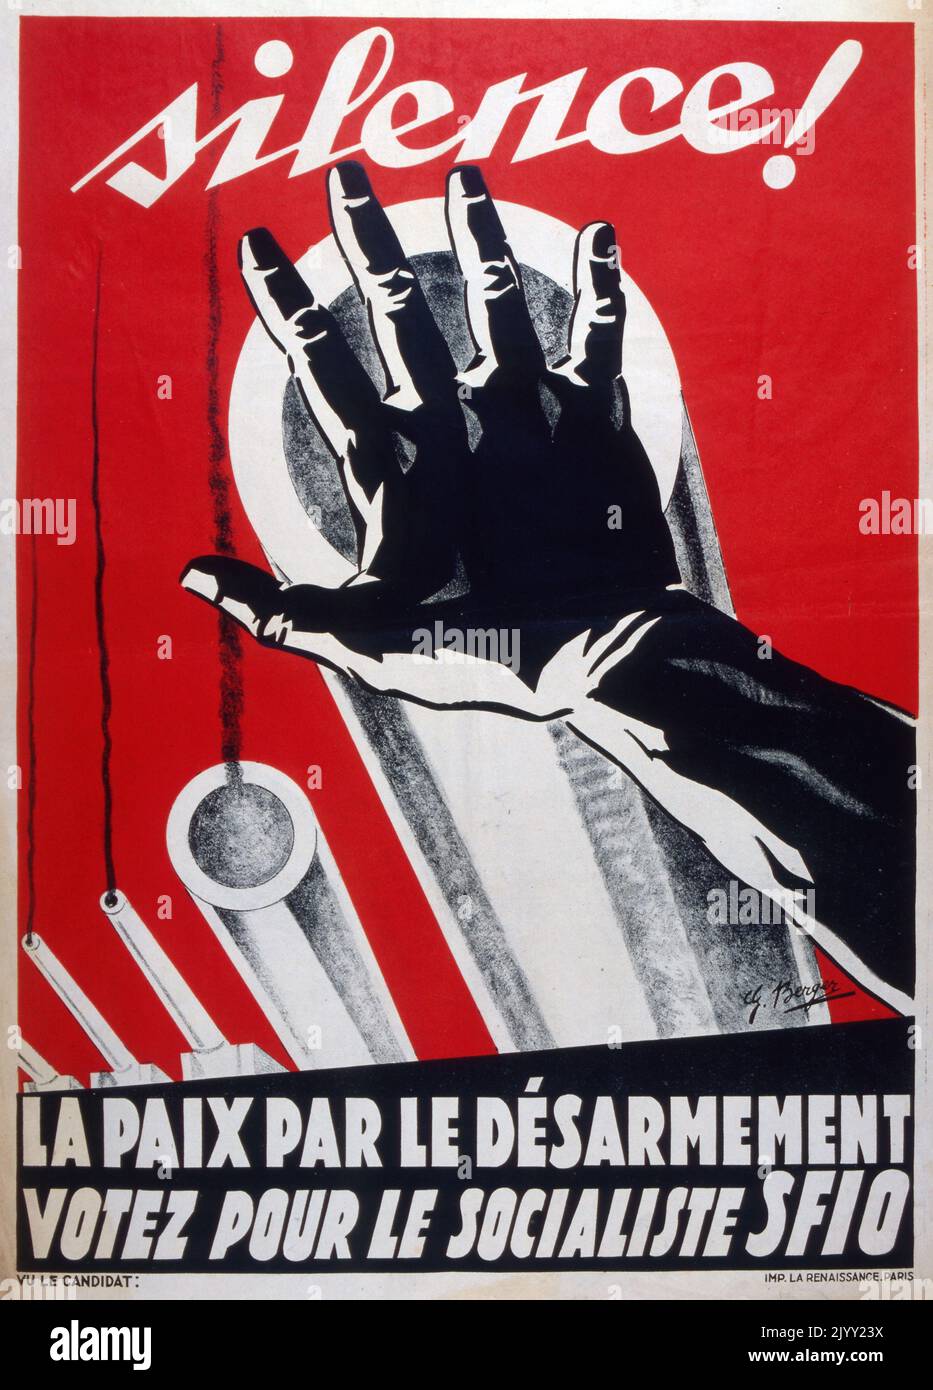 Plakat für politische Propaganda von Berger, für die Sozialistische Partei Frankreichs während der Parlamentswahlen 1932. Der Slogan lautet: Stille! la paix par le desarmement (Stille! Frieden durch Abrüstung). Stockfoto